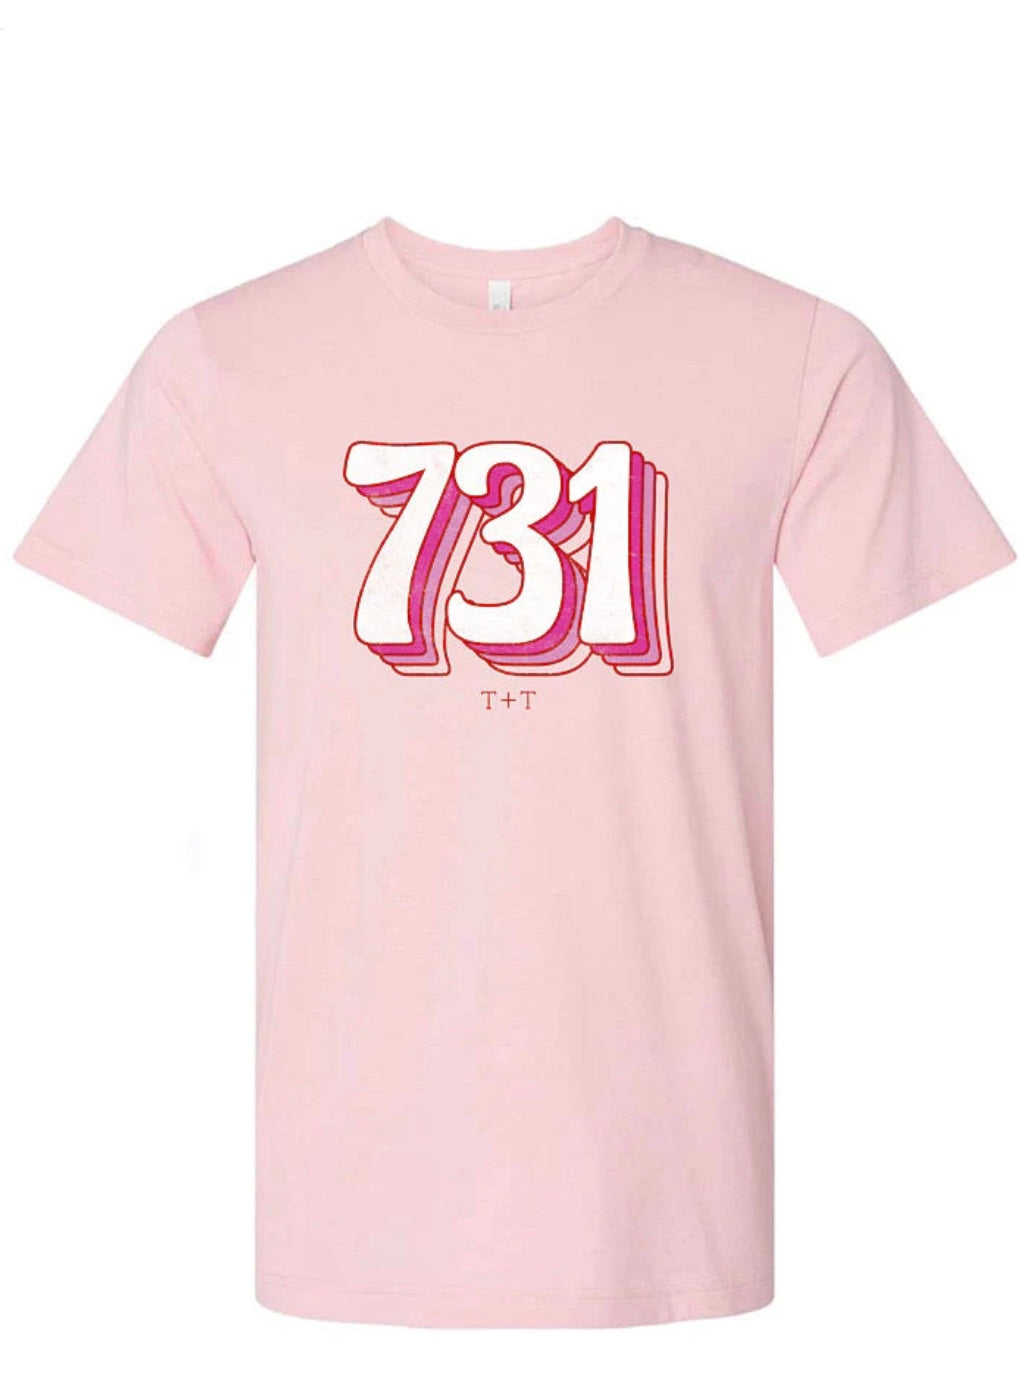 731 Vintage Pink